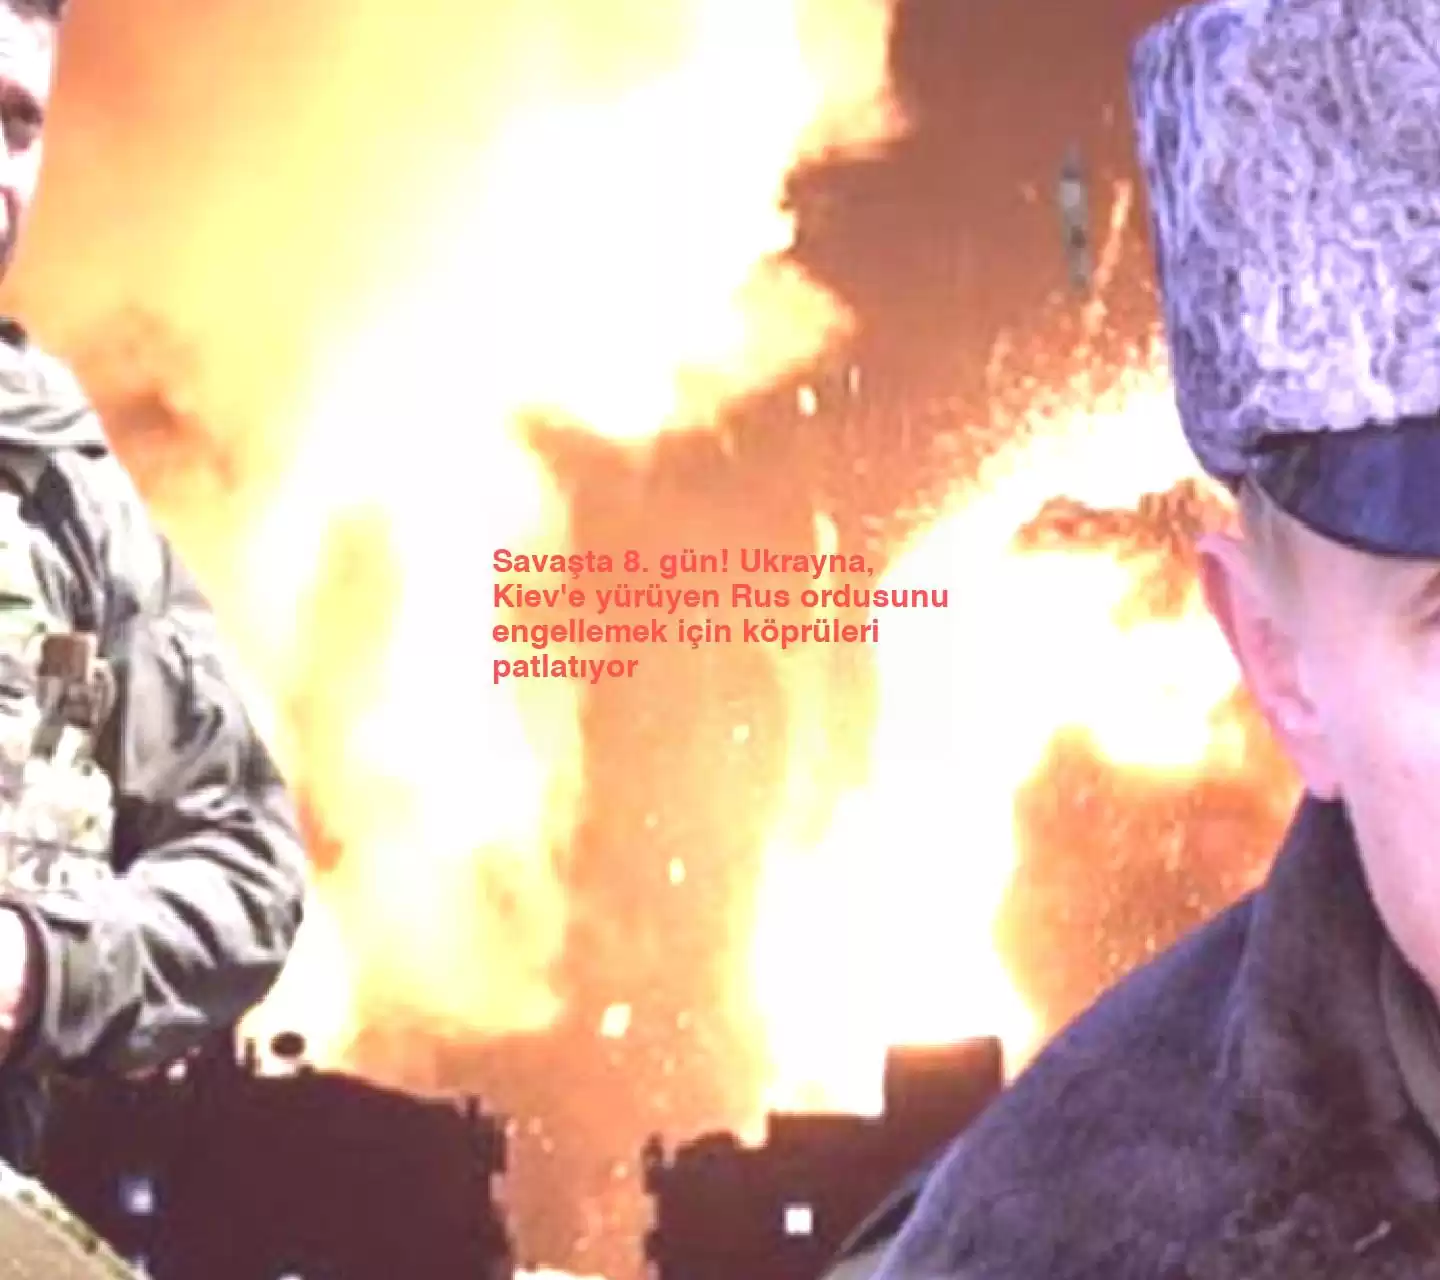 Savaşta 8. gün! Ukrayna, Kiev’e yürüyen Rus ordusunu engellemek için köprüleri patlatıyor